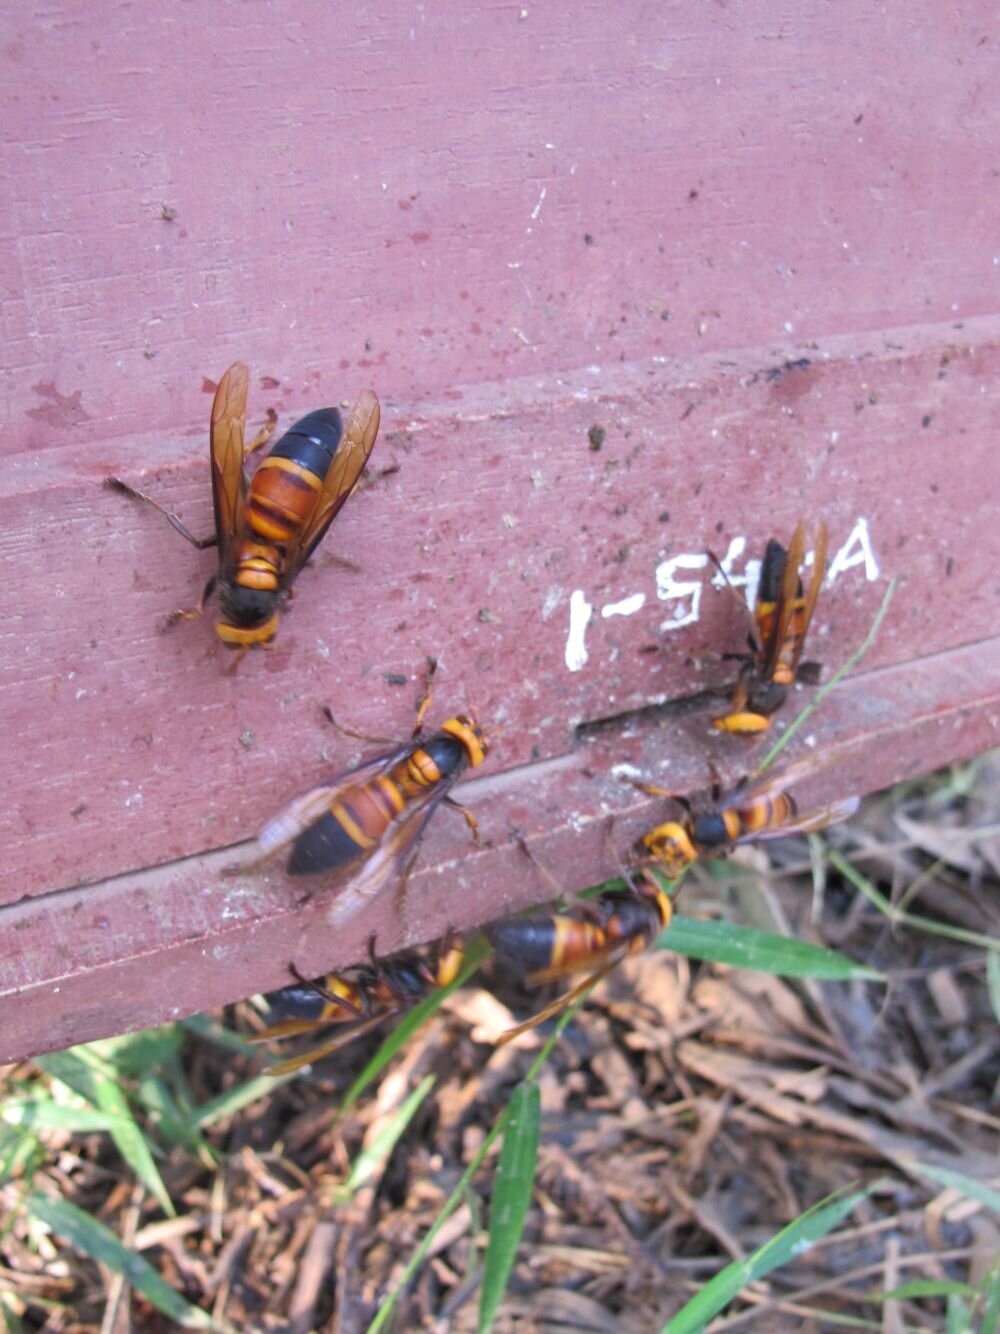 Para afastar vespas, abelhas são vistas usando ferramenta pela primeira vez (Foto: Reprodução/Heather Mattila)